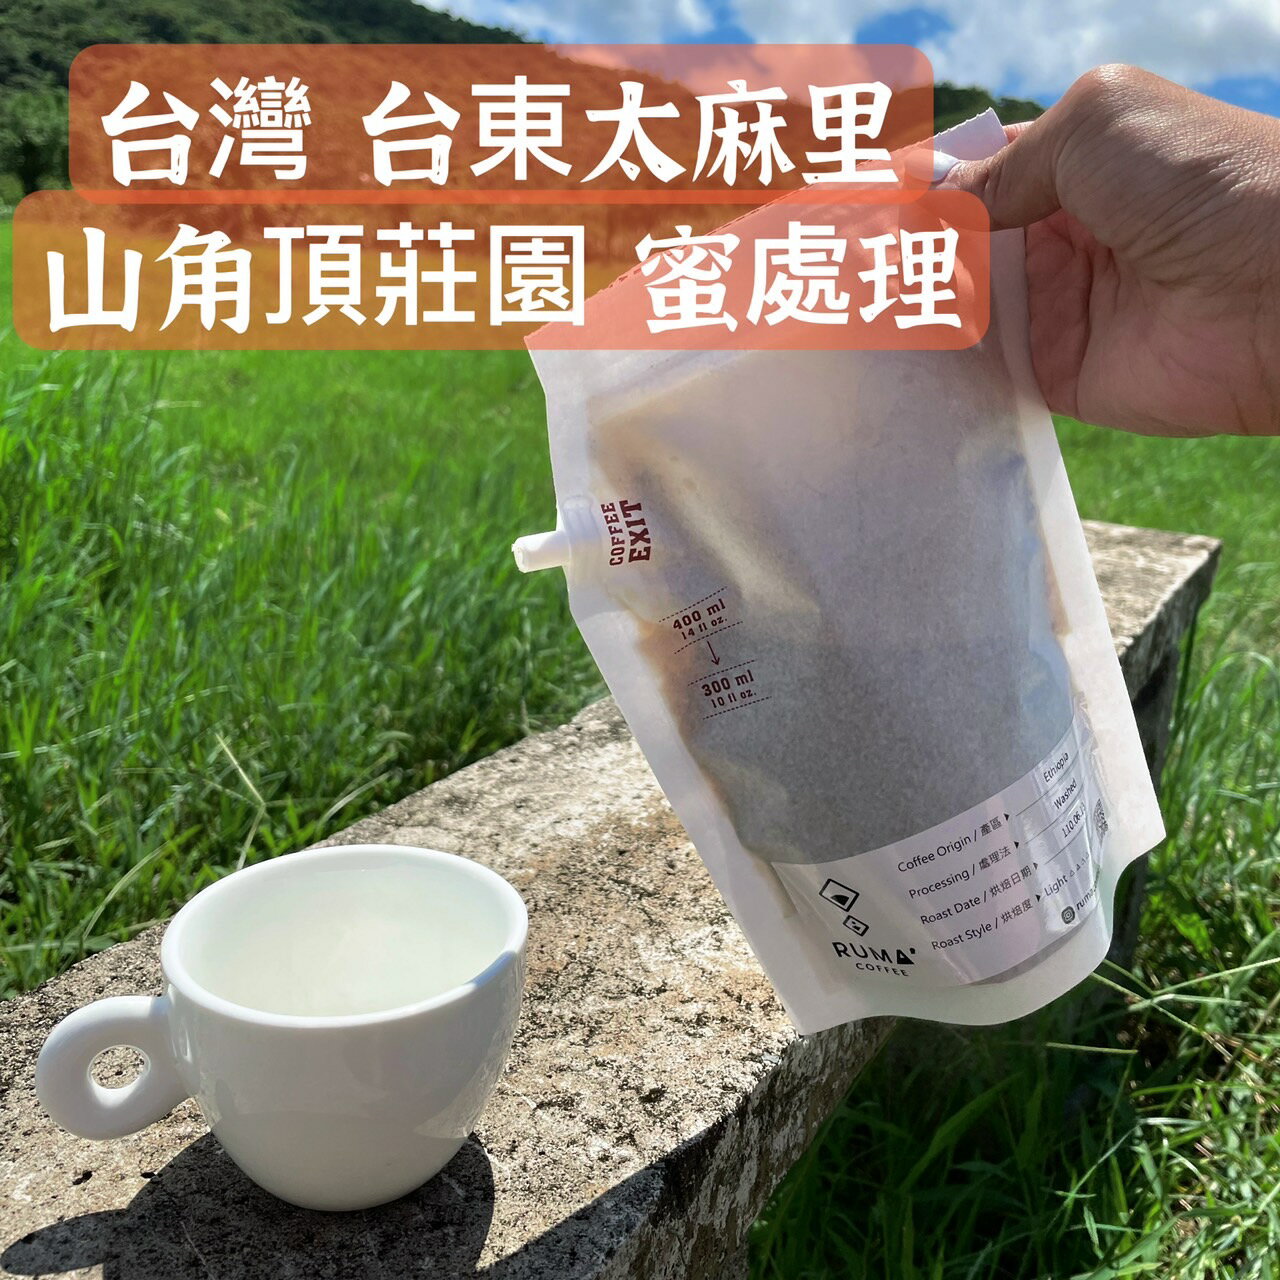 【兩件8折】咖啡 紙啡機 露營 戶外,台灣咖啡 台東莊園 山角頂莊園蜜處理 (250ml/400ml)